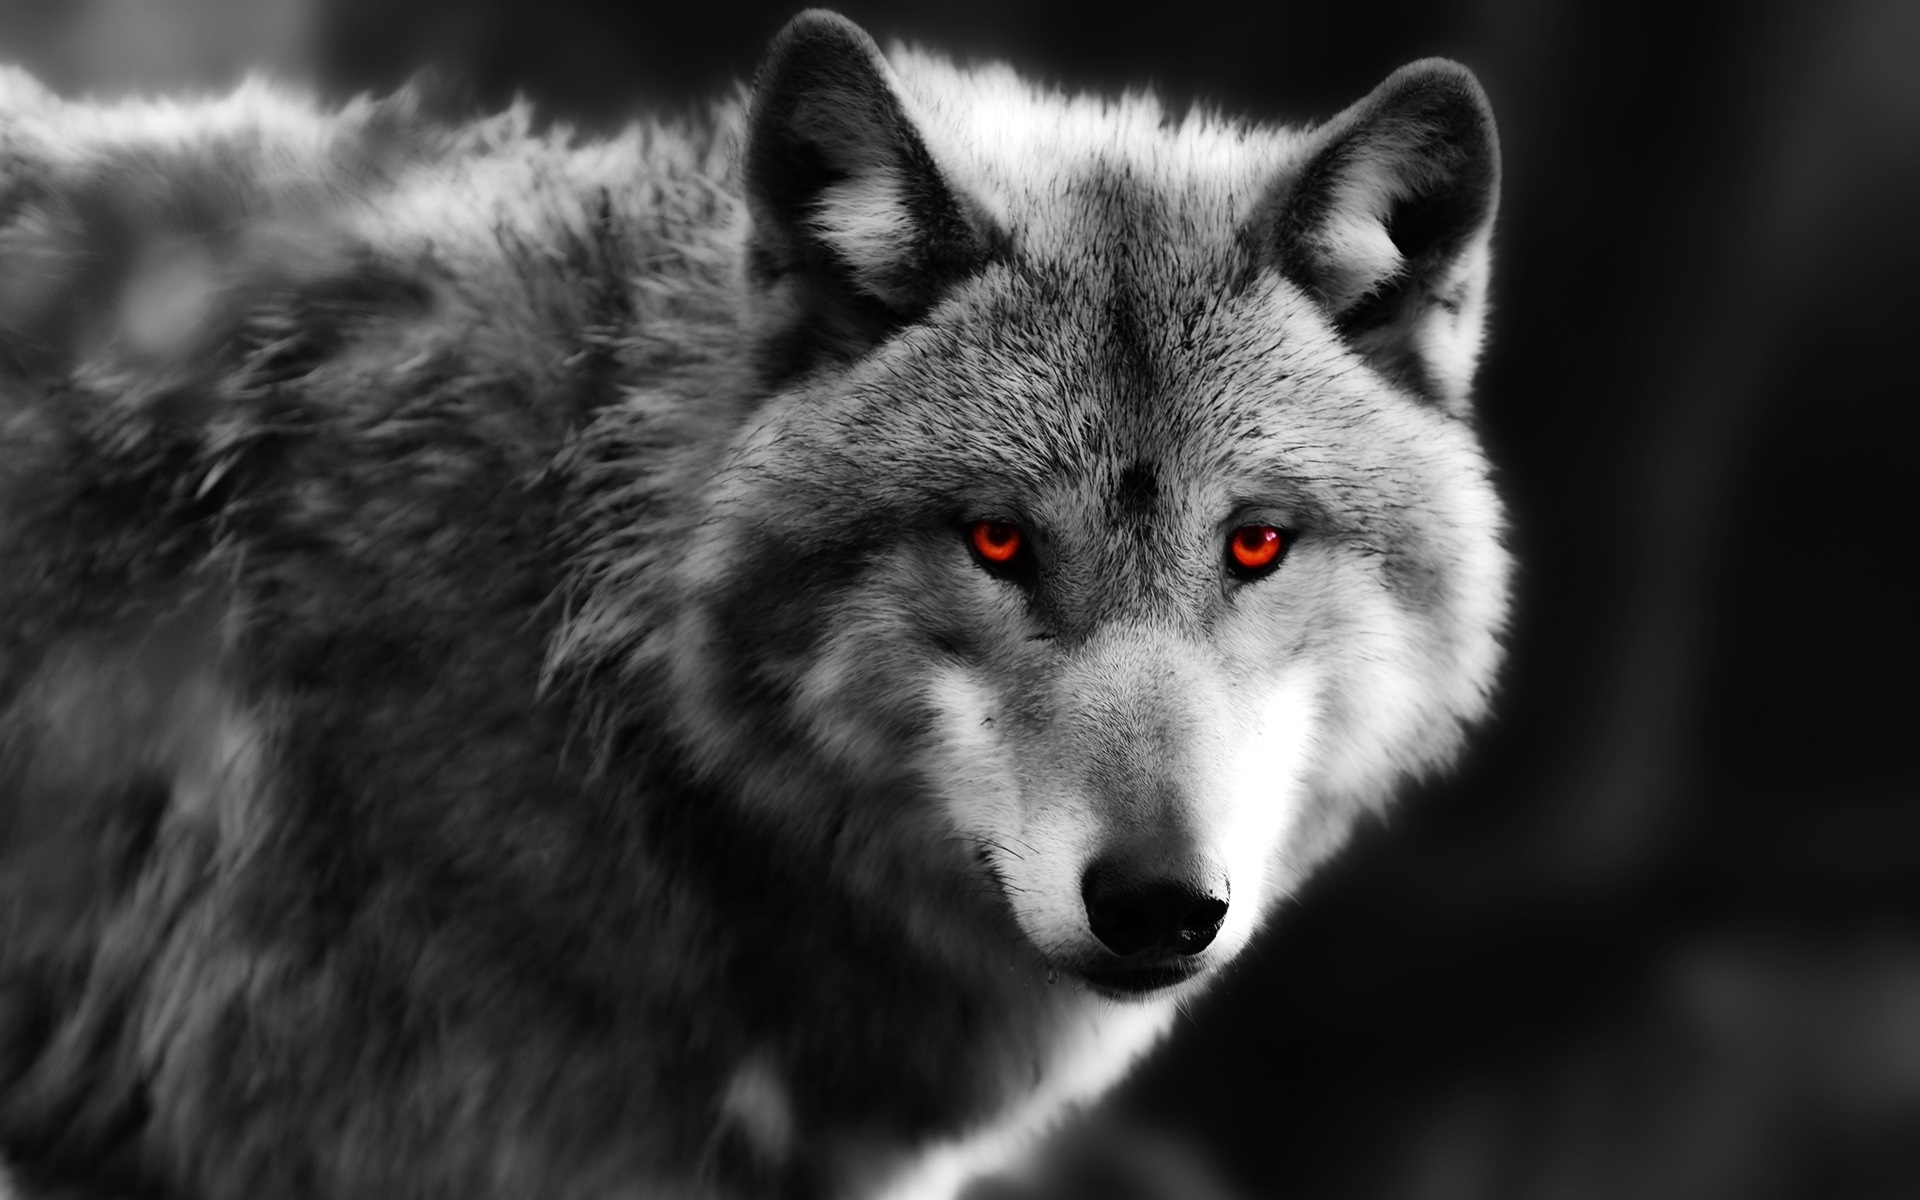 狼特写镜头,红色的眼睛,捕食者壁纸1280x960分辨率查看